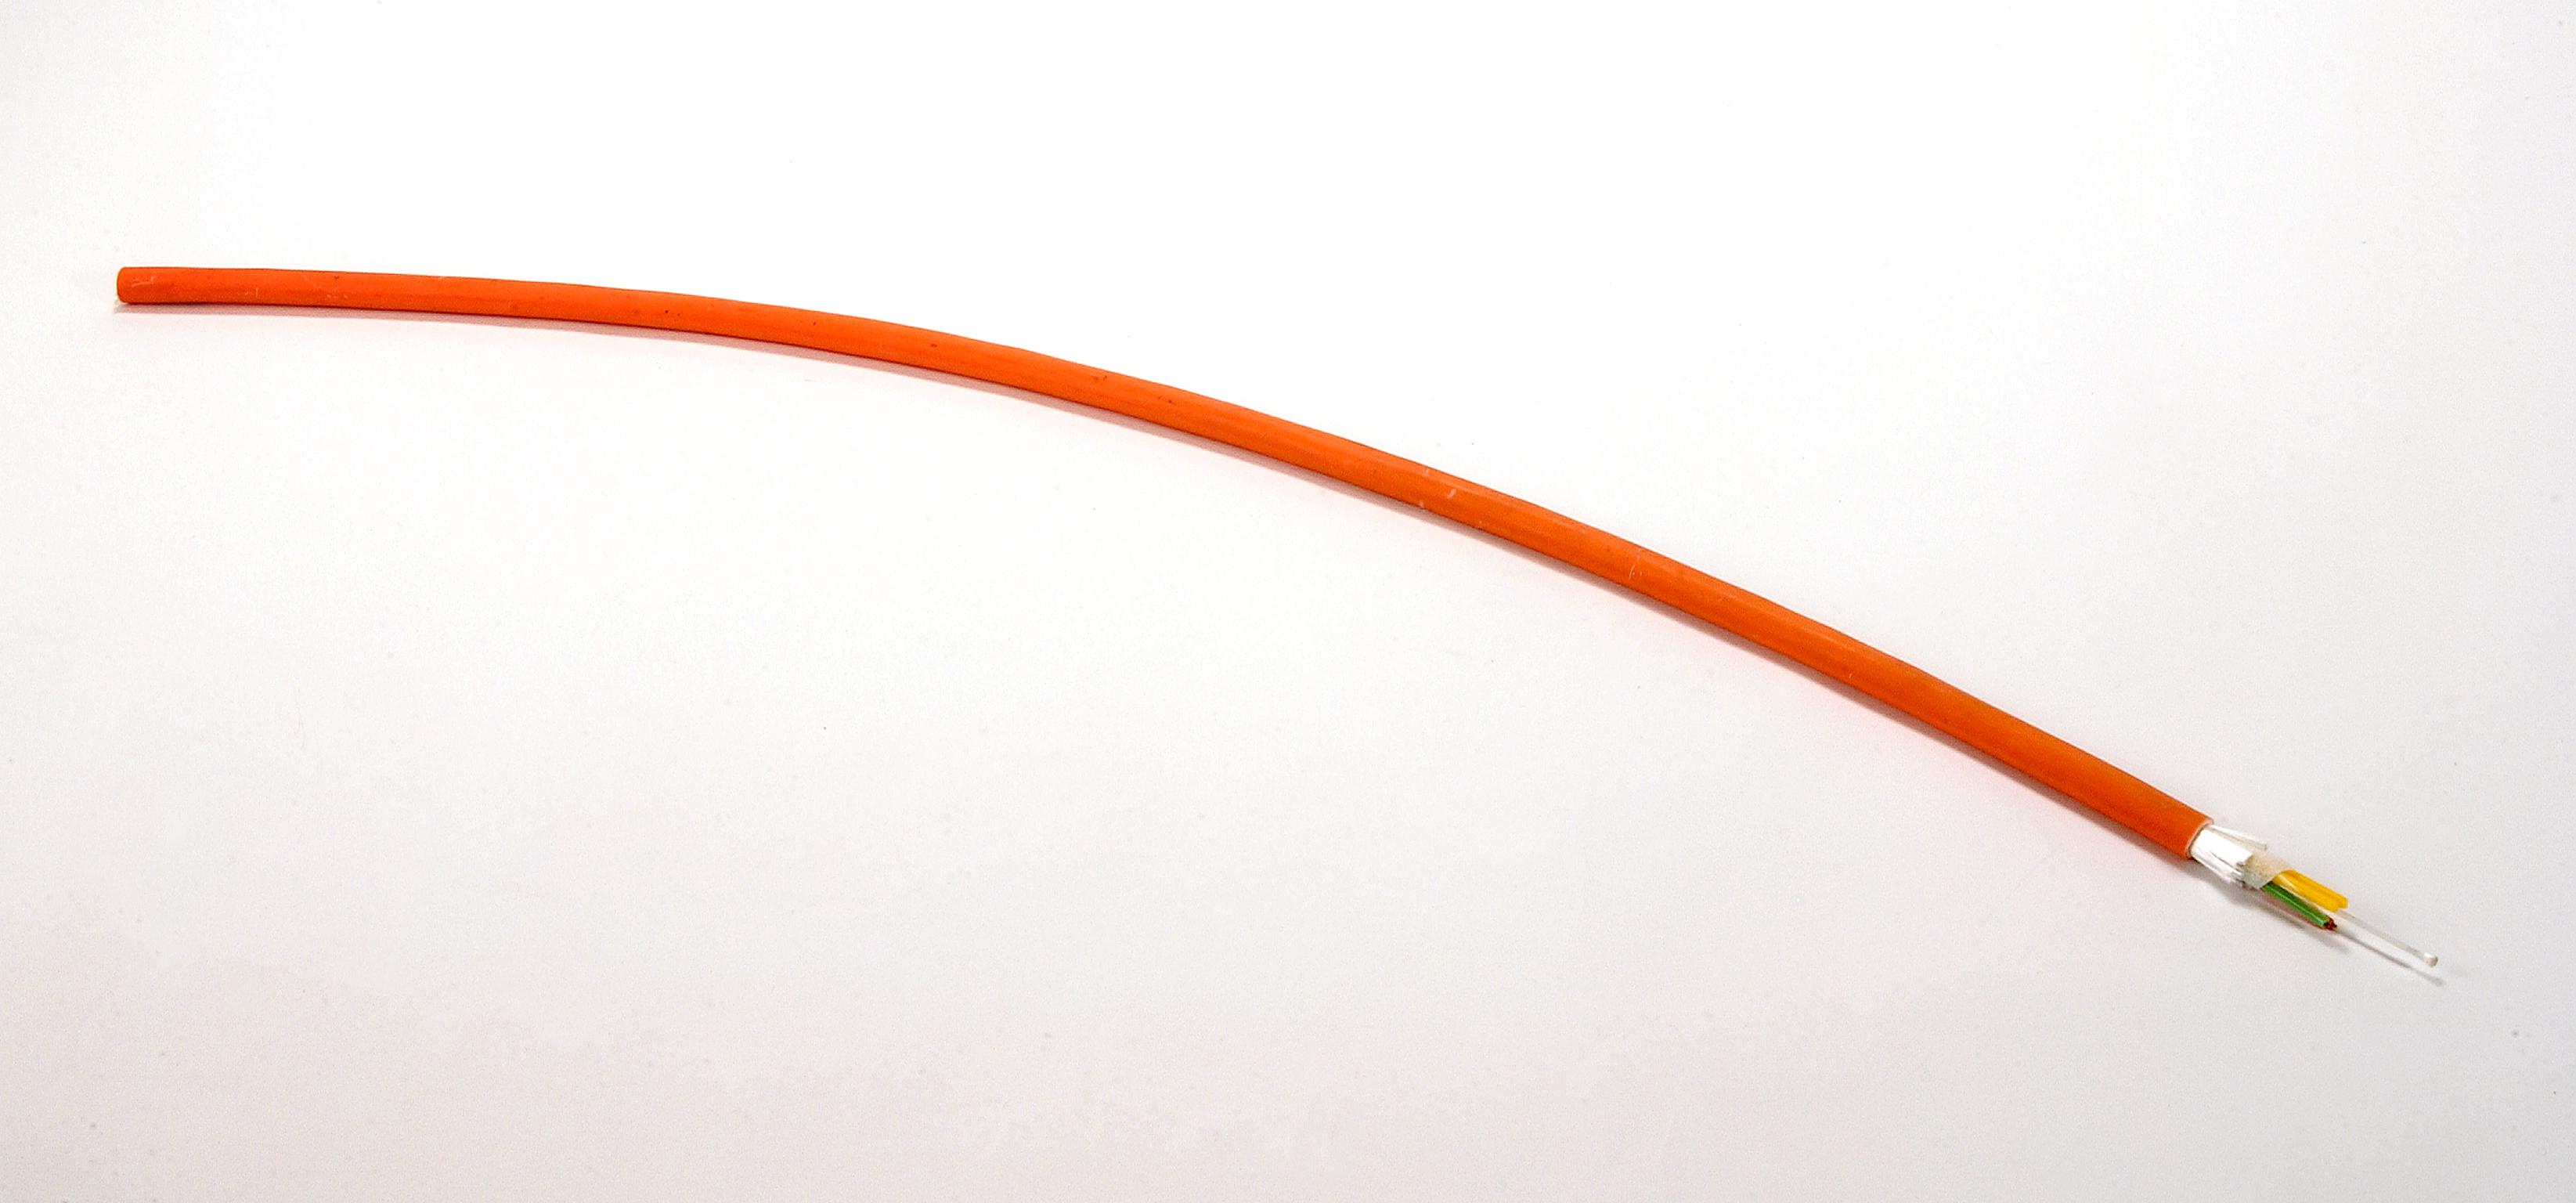 Fibre optic cable